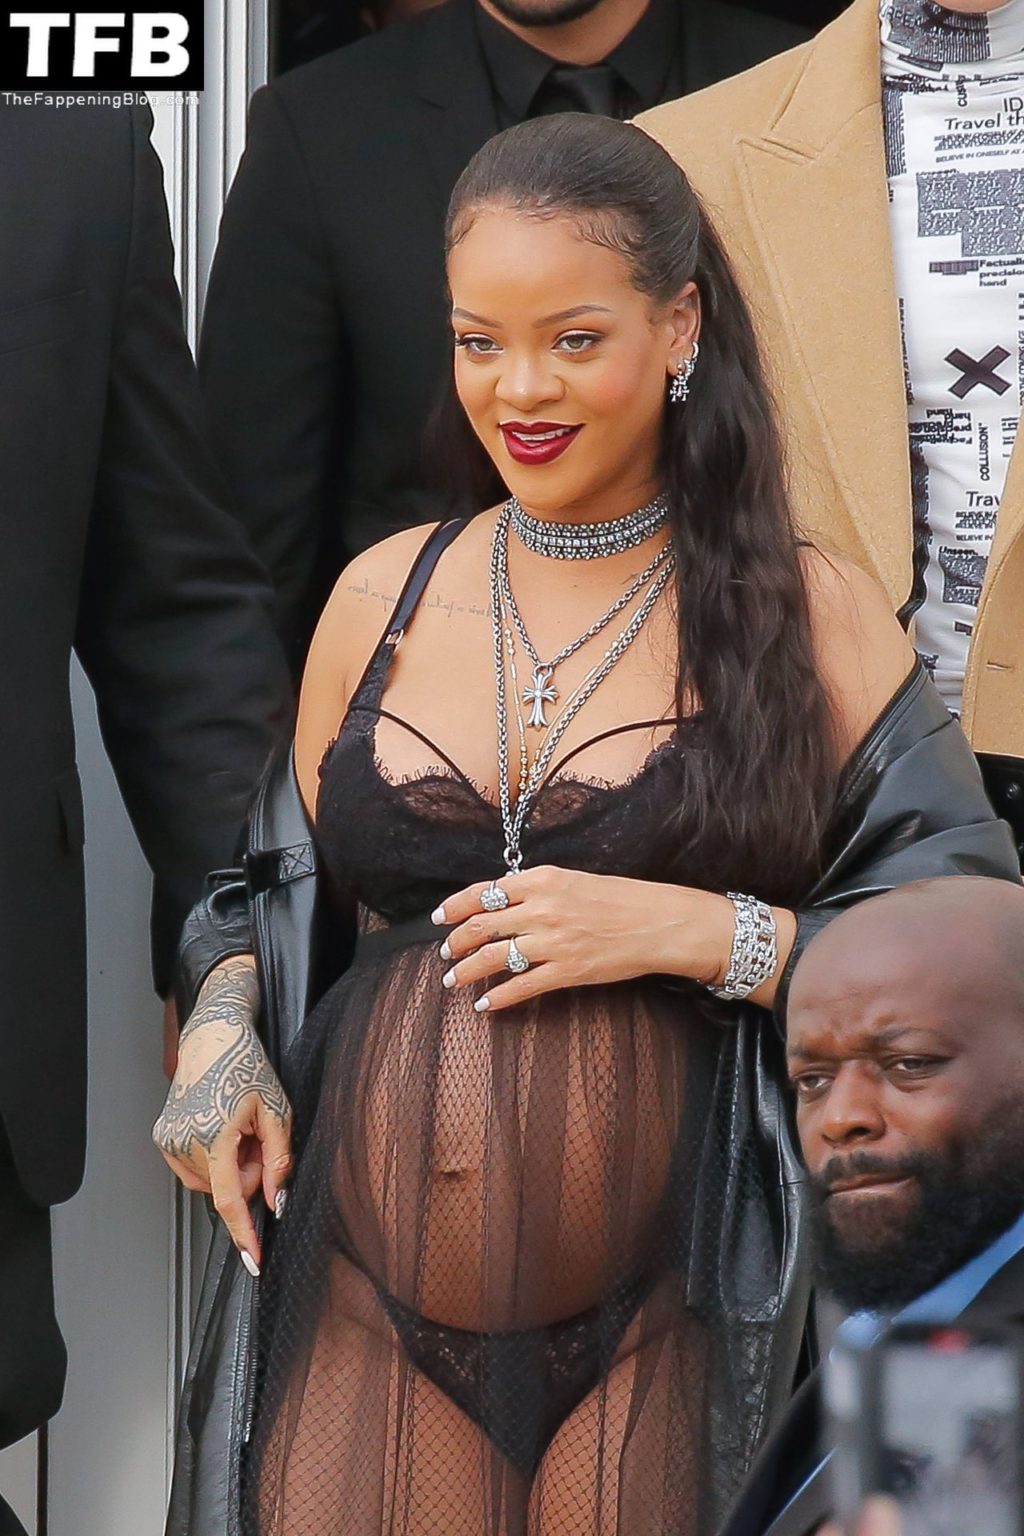 Pregnant Rihanna Looks Hot at the Dior Fashion Show in Paris (150 Photos)